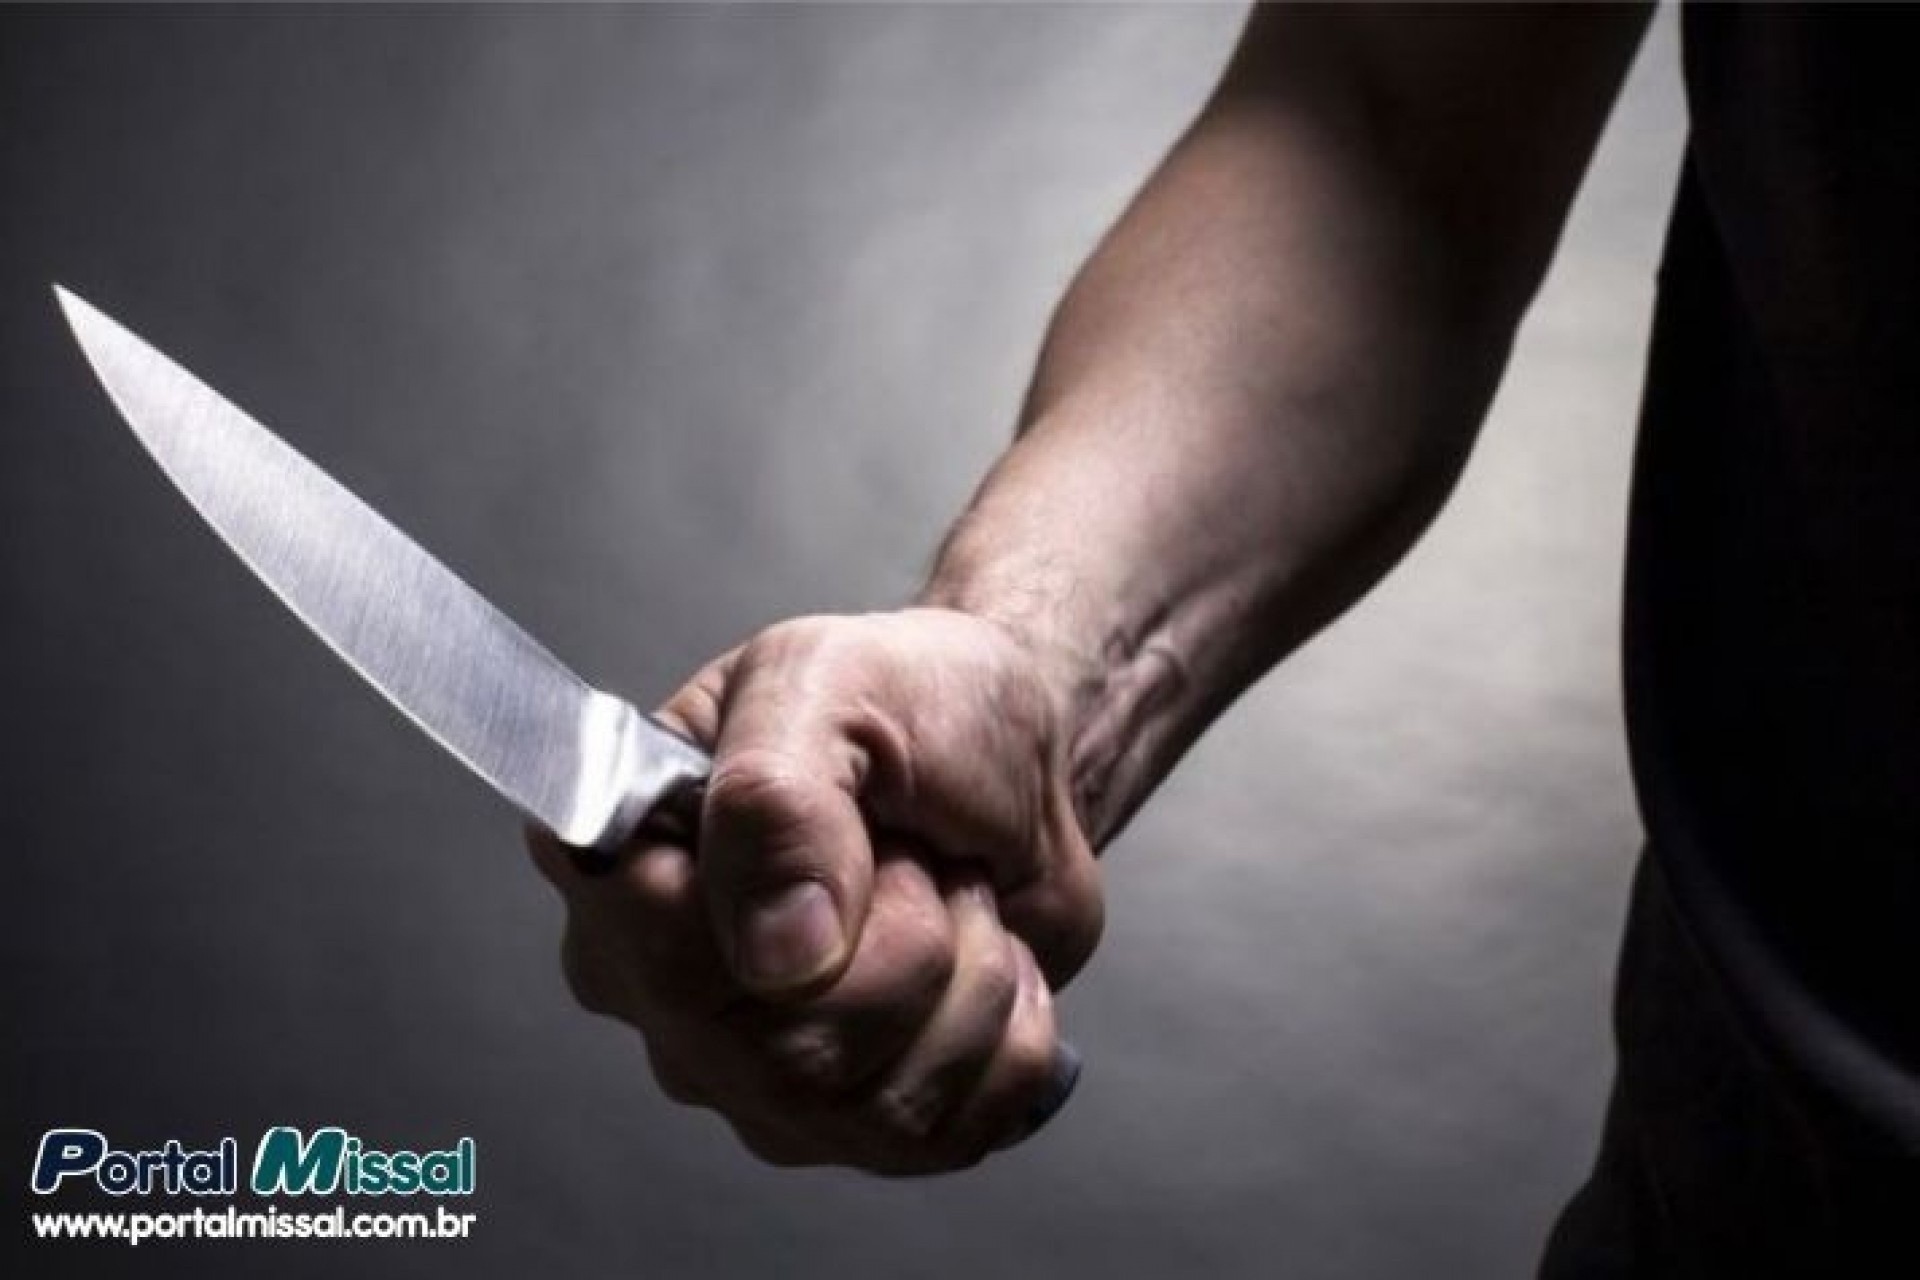 Itaipulândia: Homem fica em estado grave após levar duas facadas durante discussão em bar